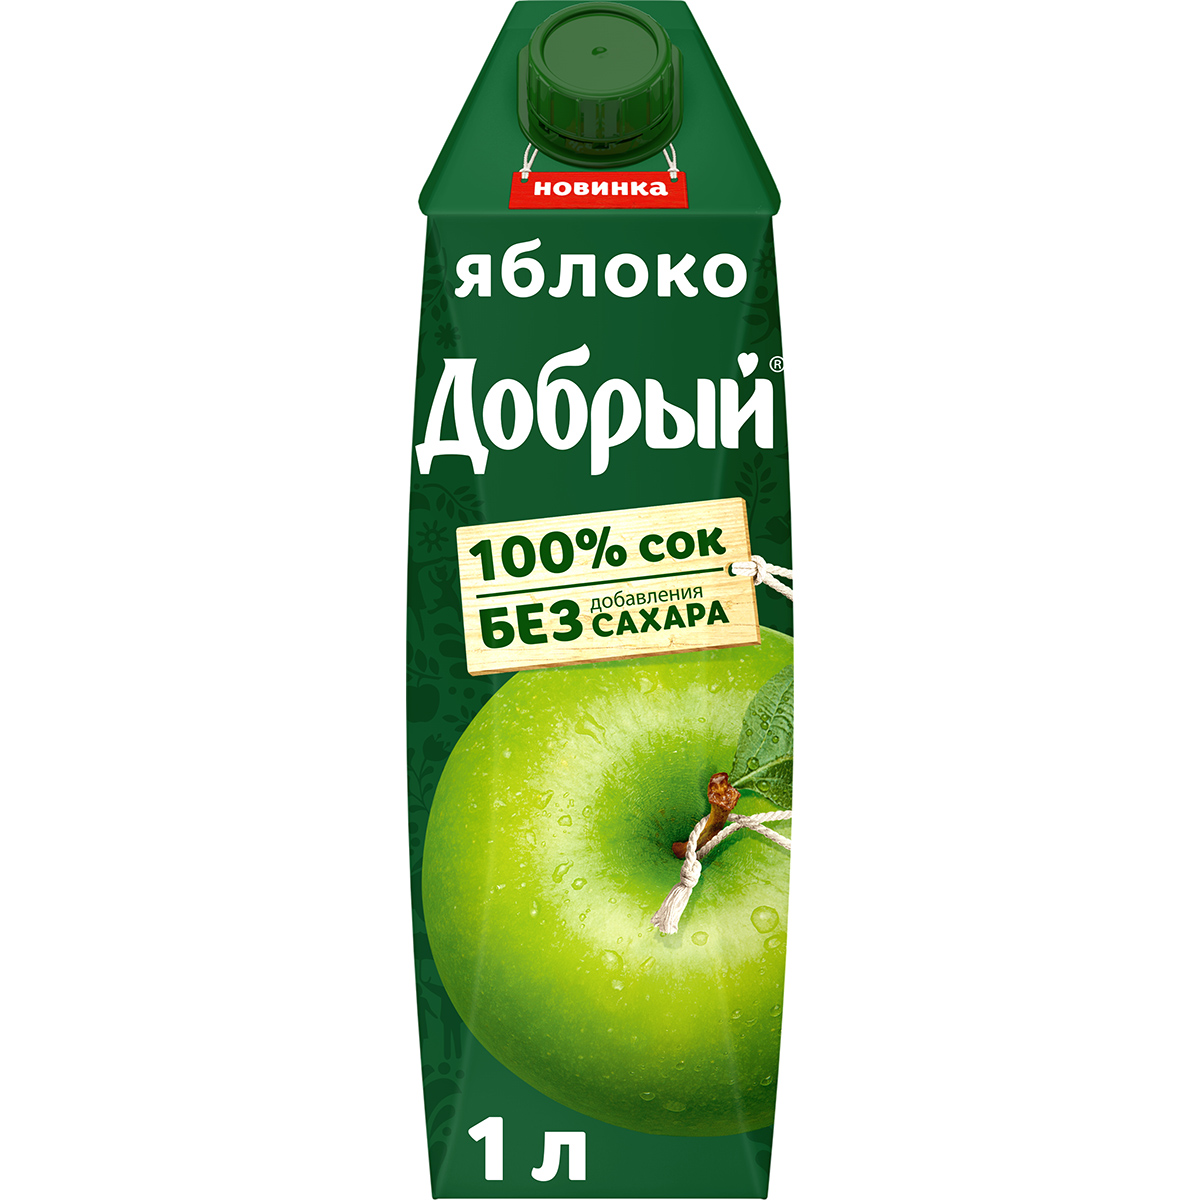 Сок Добрый яблочный осветленный 100% 1 л сок добрый томат 1 л